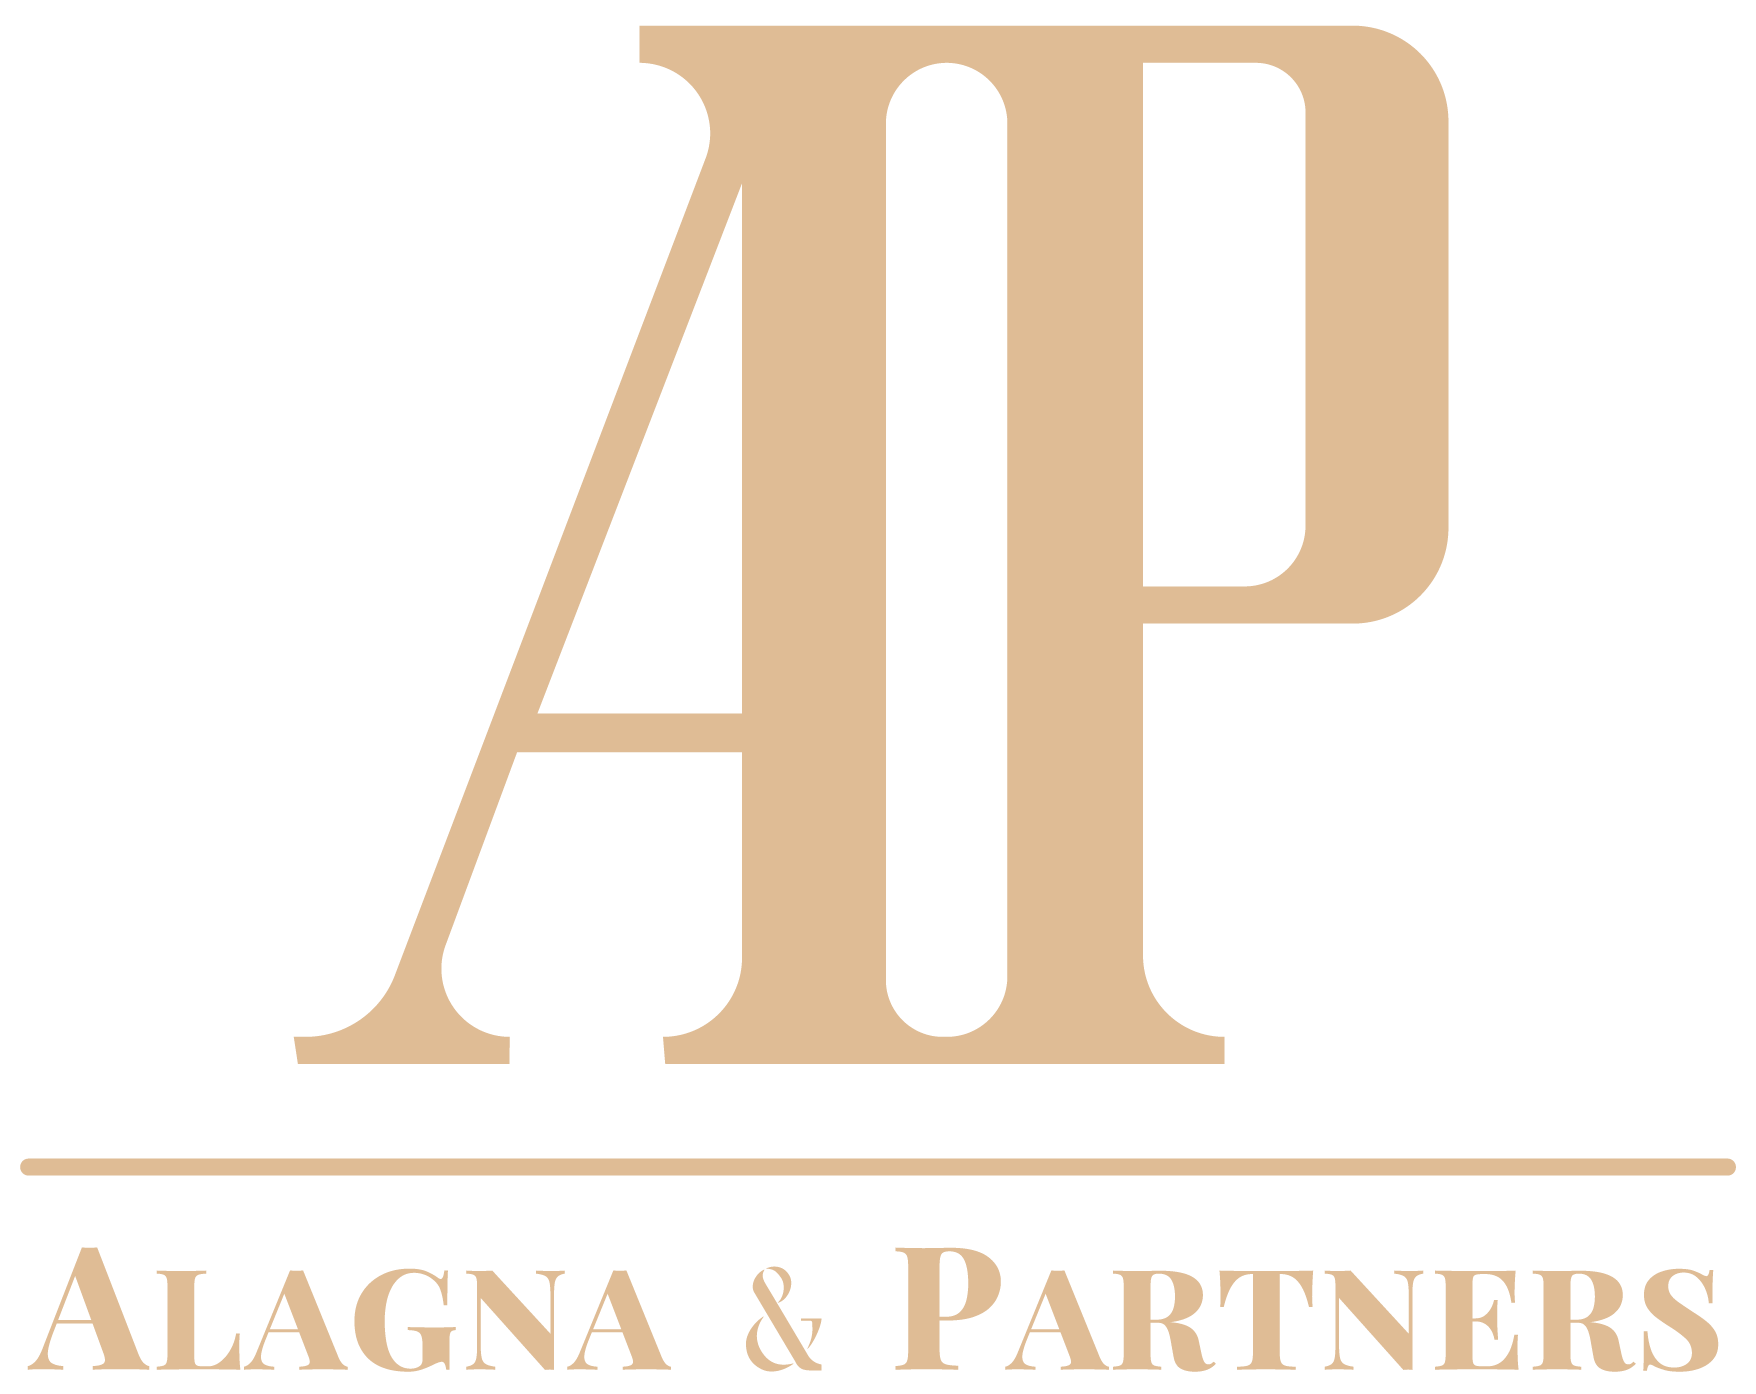 Alagna & Partners